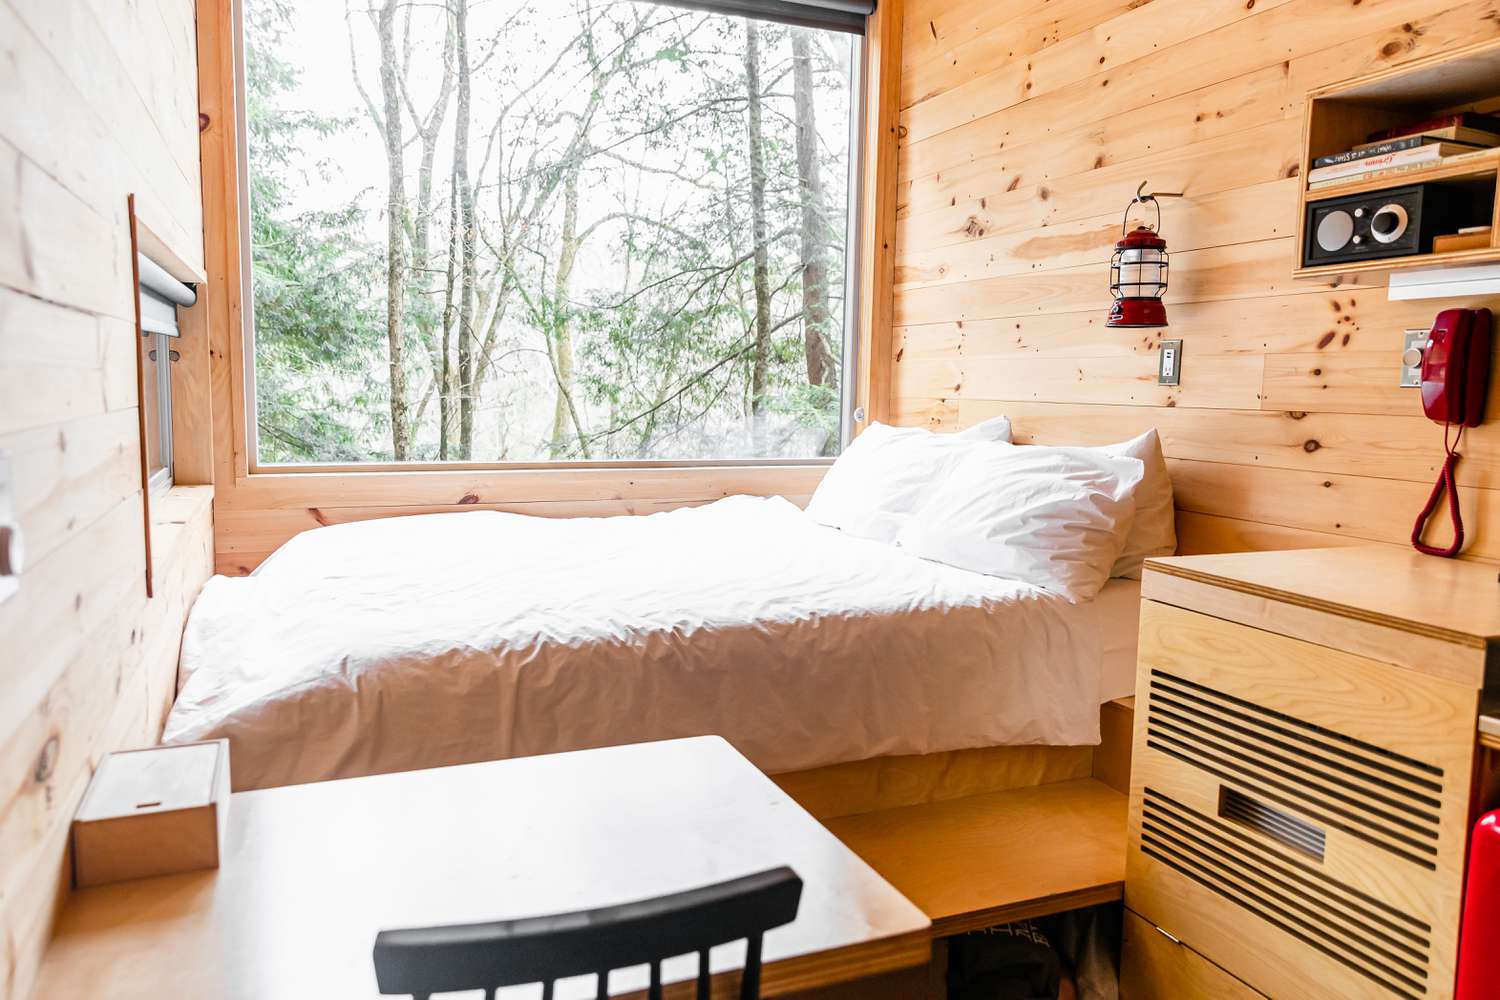 Winziges Holzhaus mit Bett neben einem großen Fenster mit Bäumen